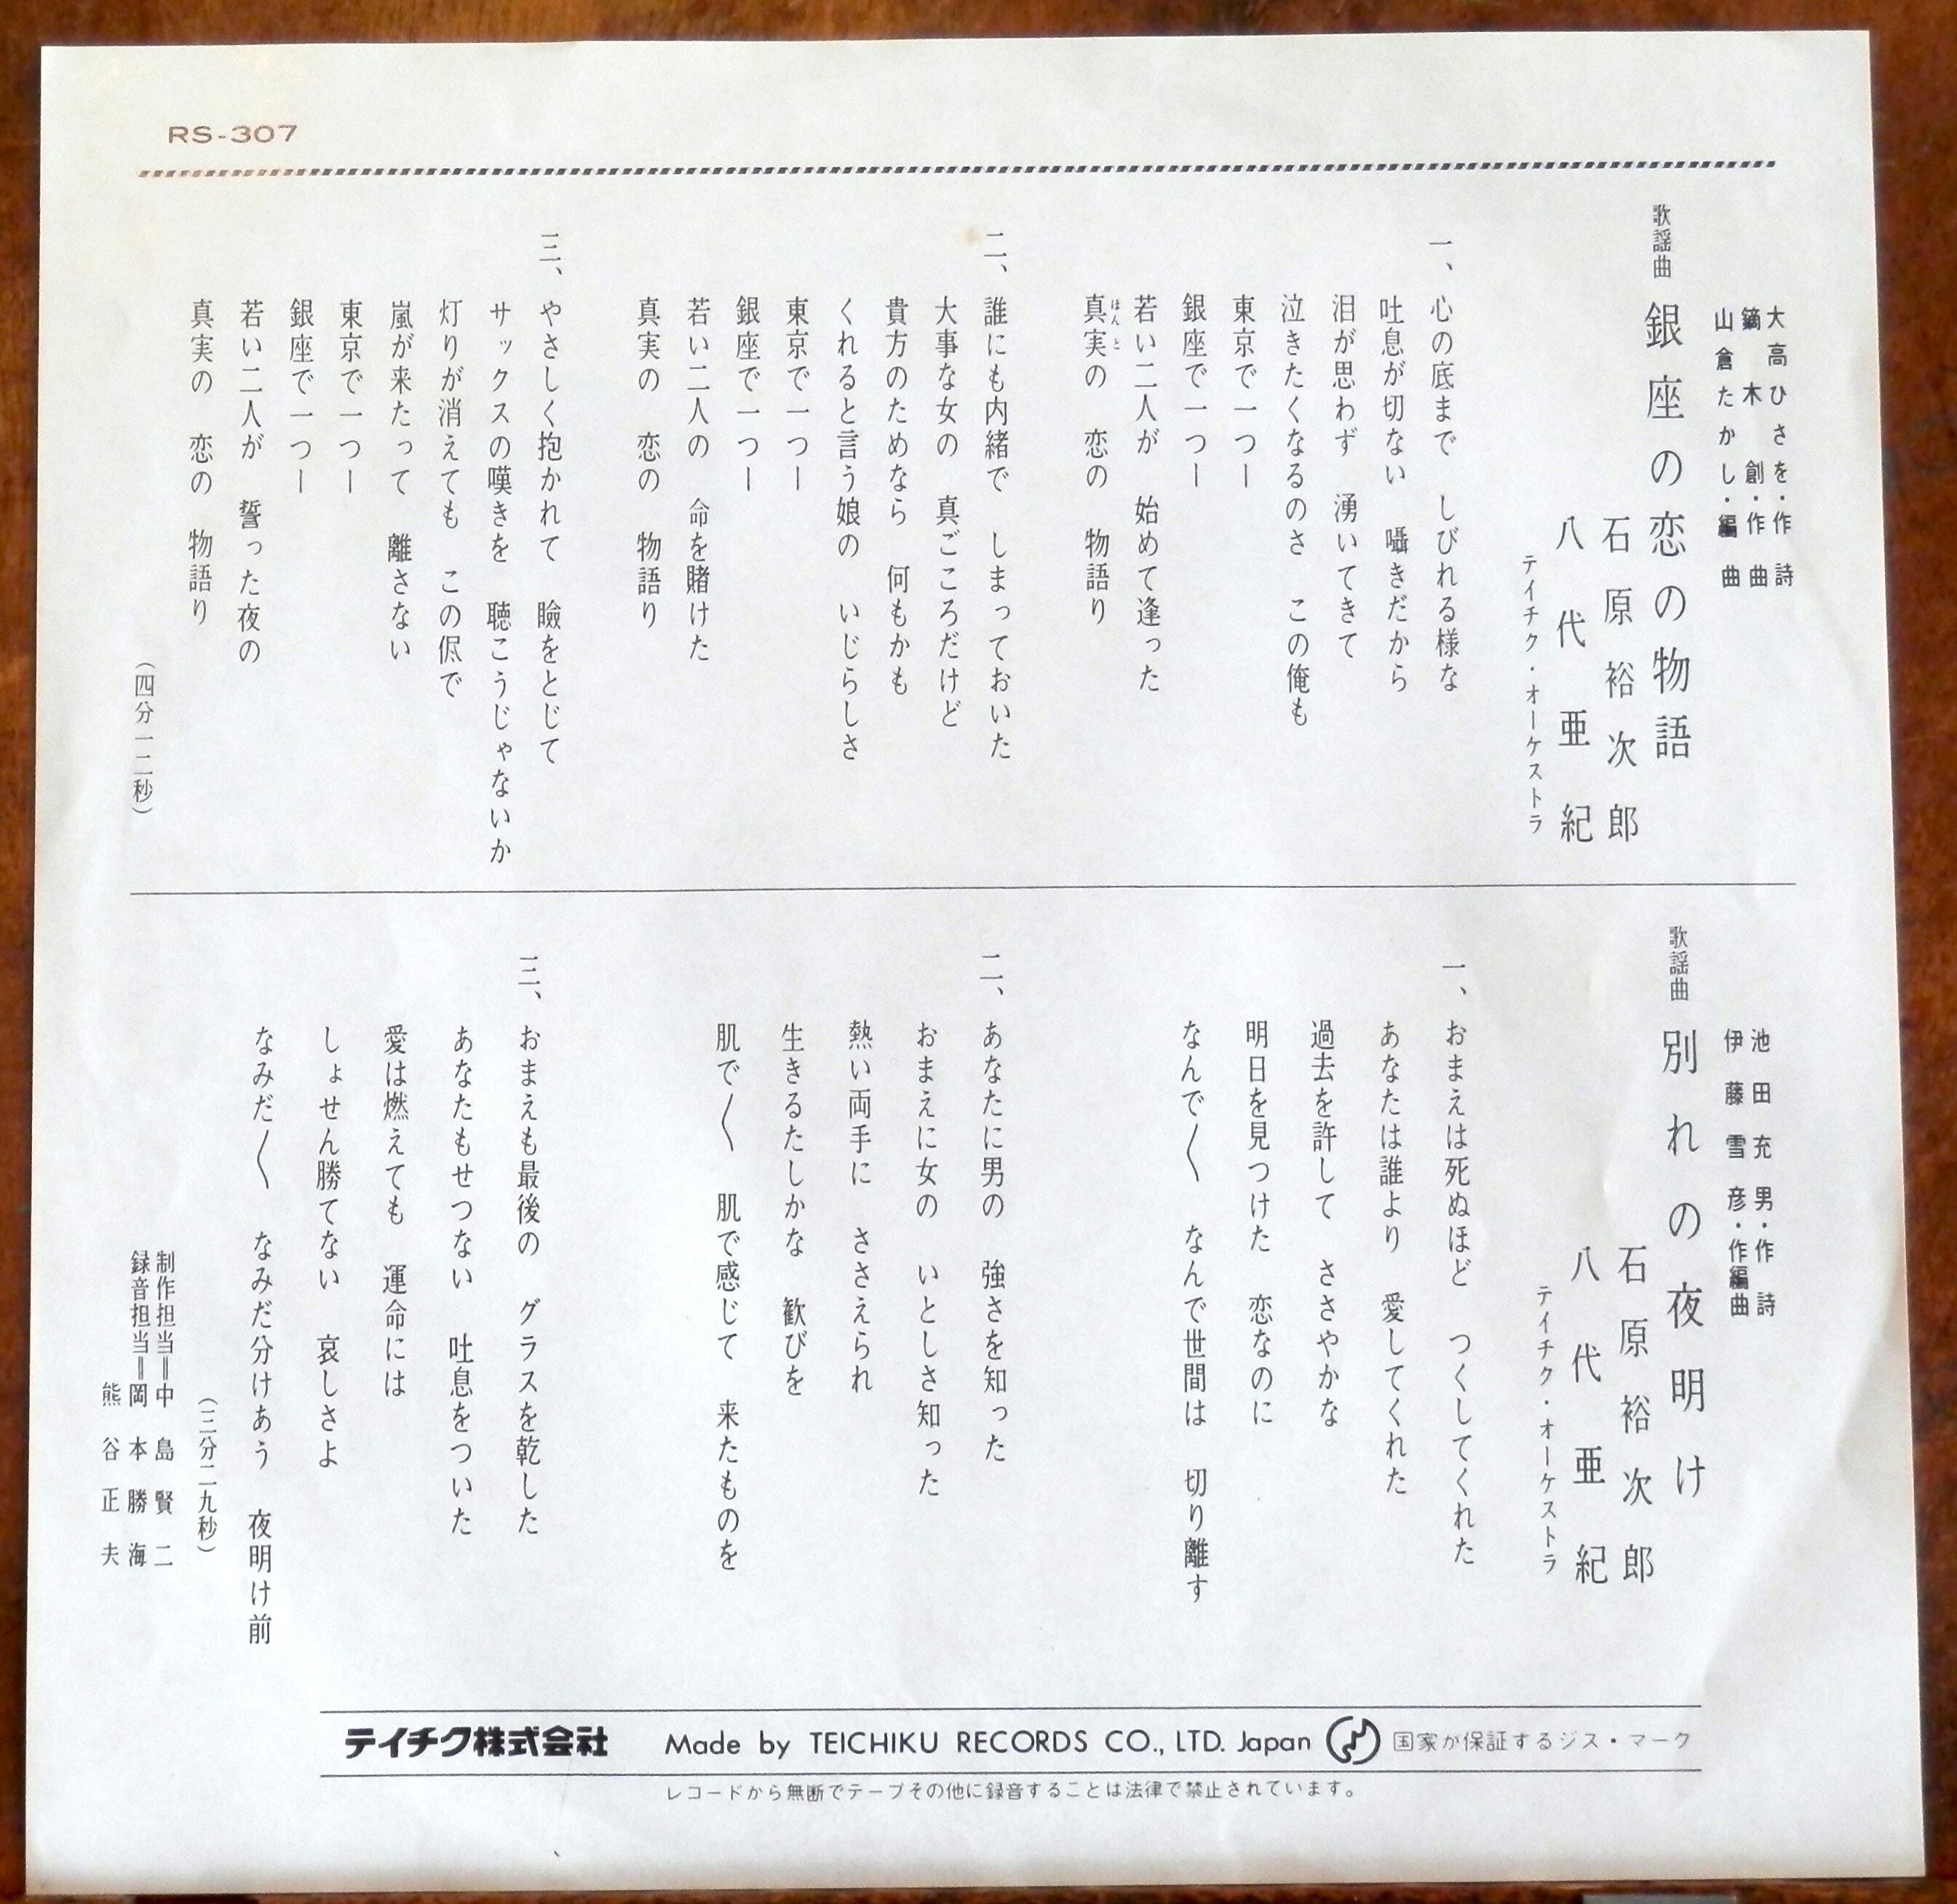 再【EP】石原裕次郎/八代亜紀 - 銀座の恋の物語 | 音盤窟レコード